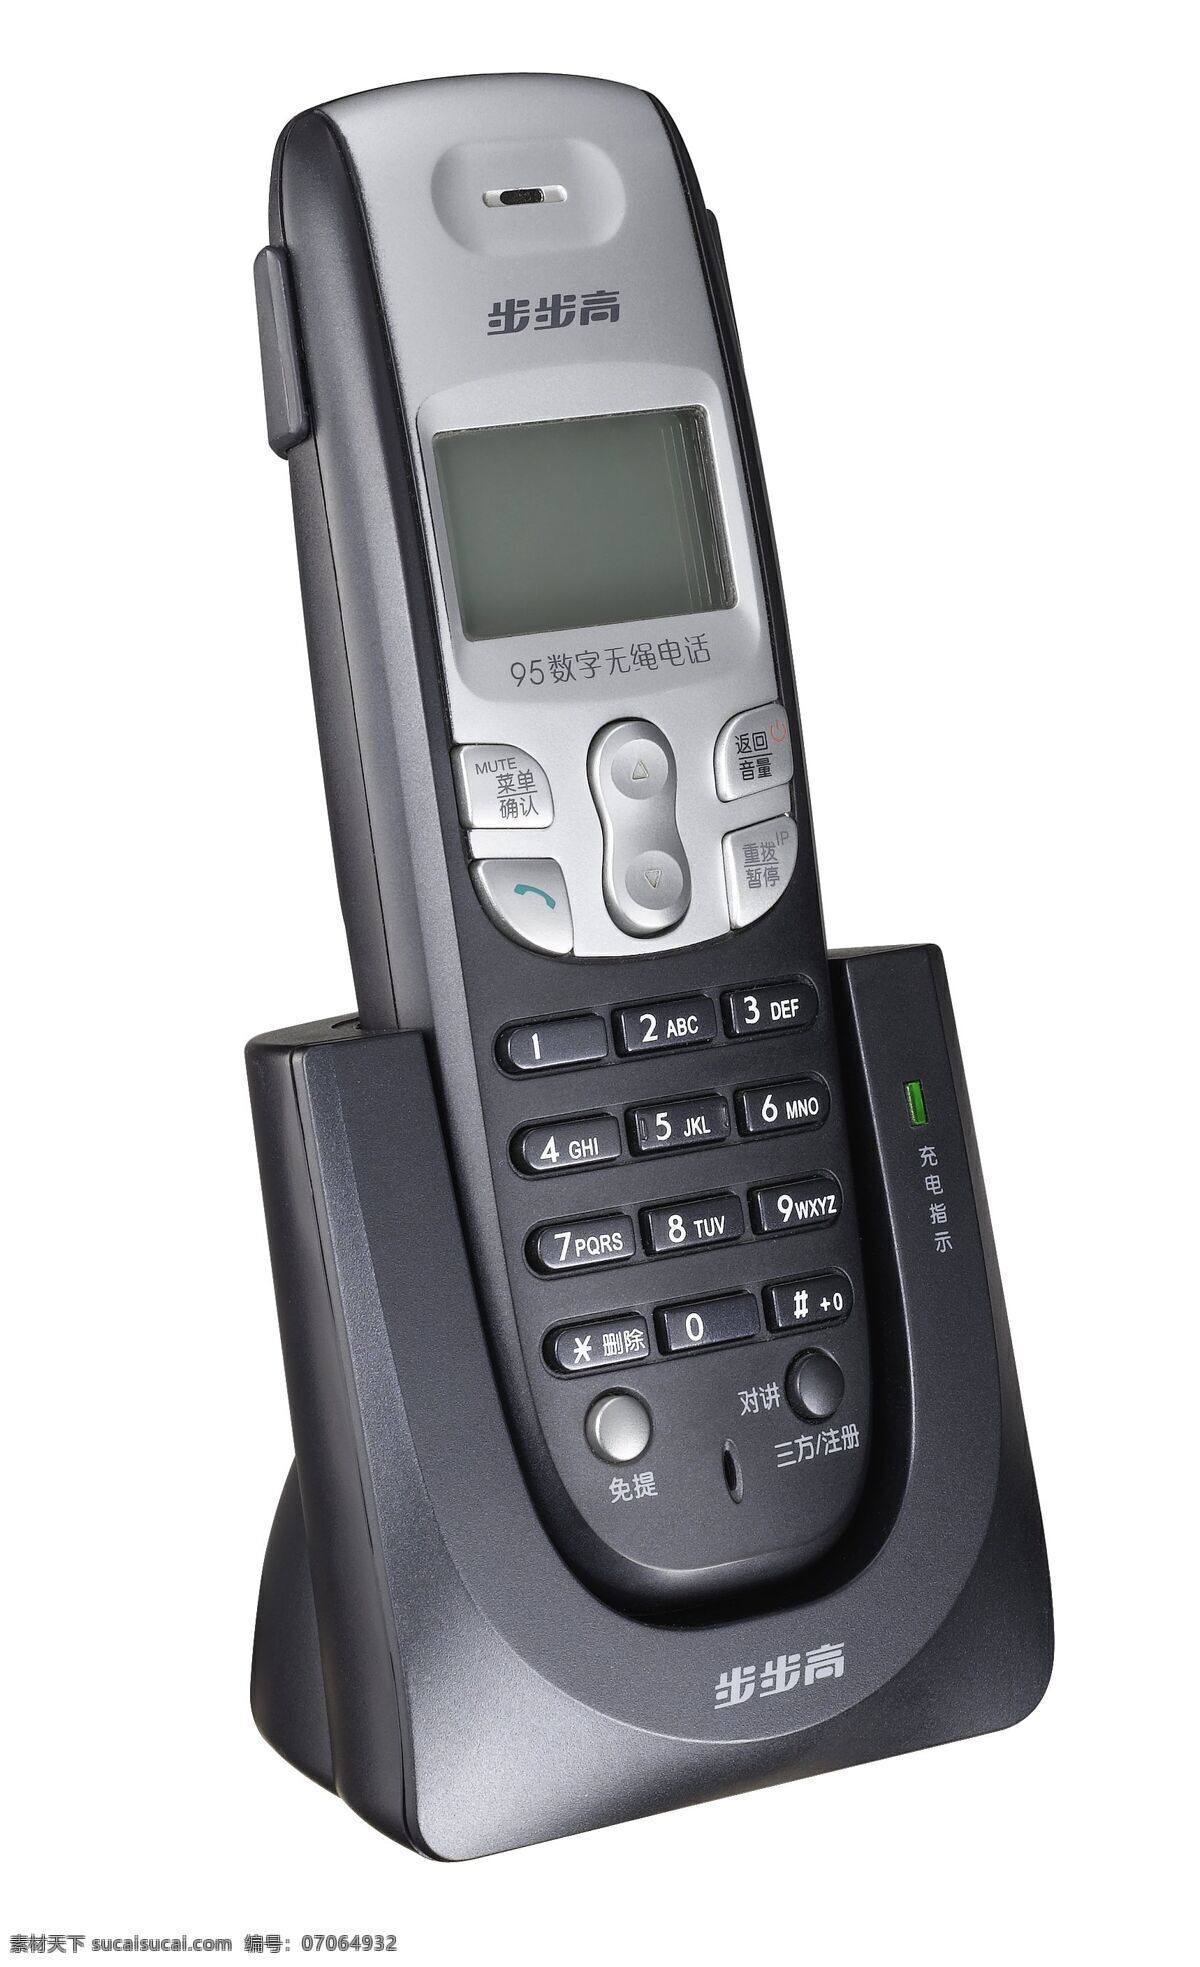 手机 电话 通讯设备 大哥大 诺基亚 生活百科 数码家电